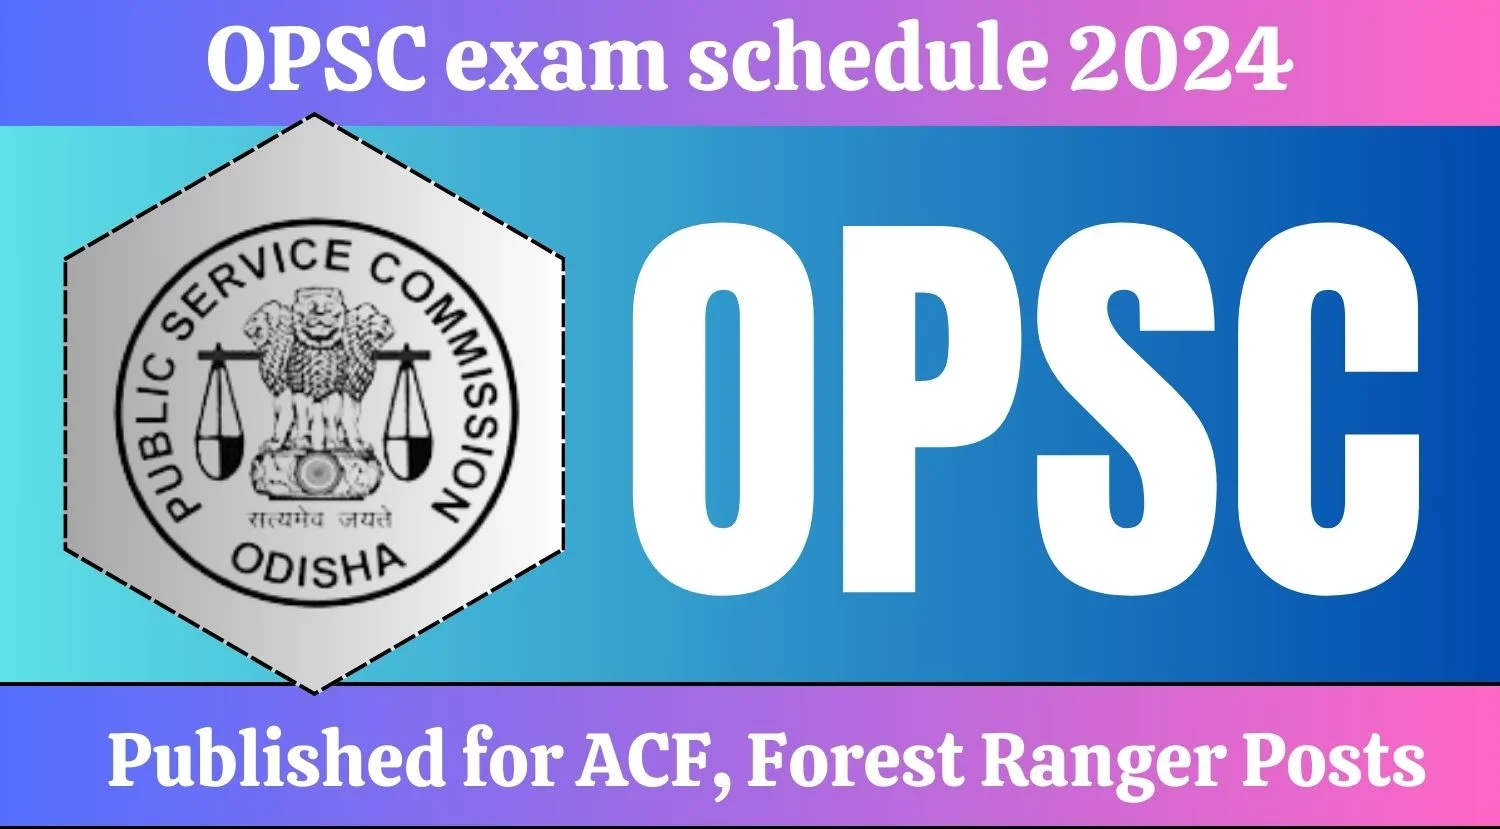 OPSC exam schedule 2024